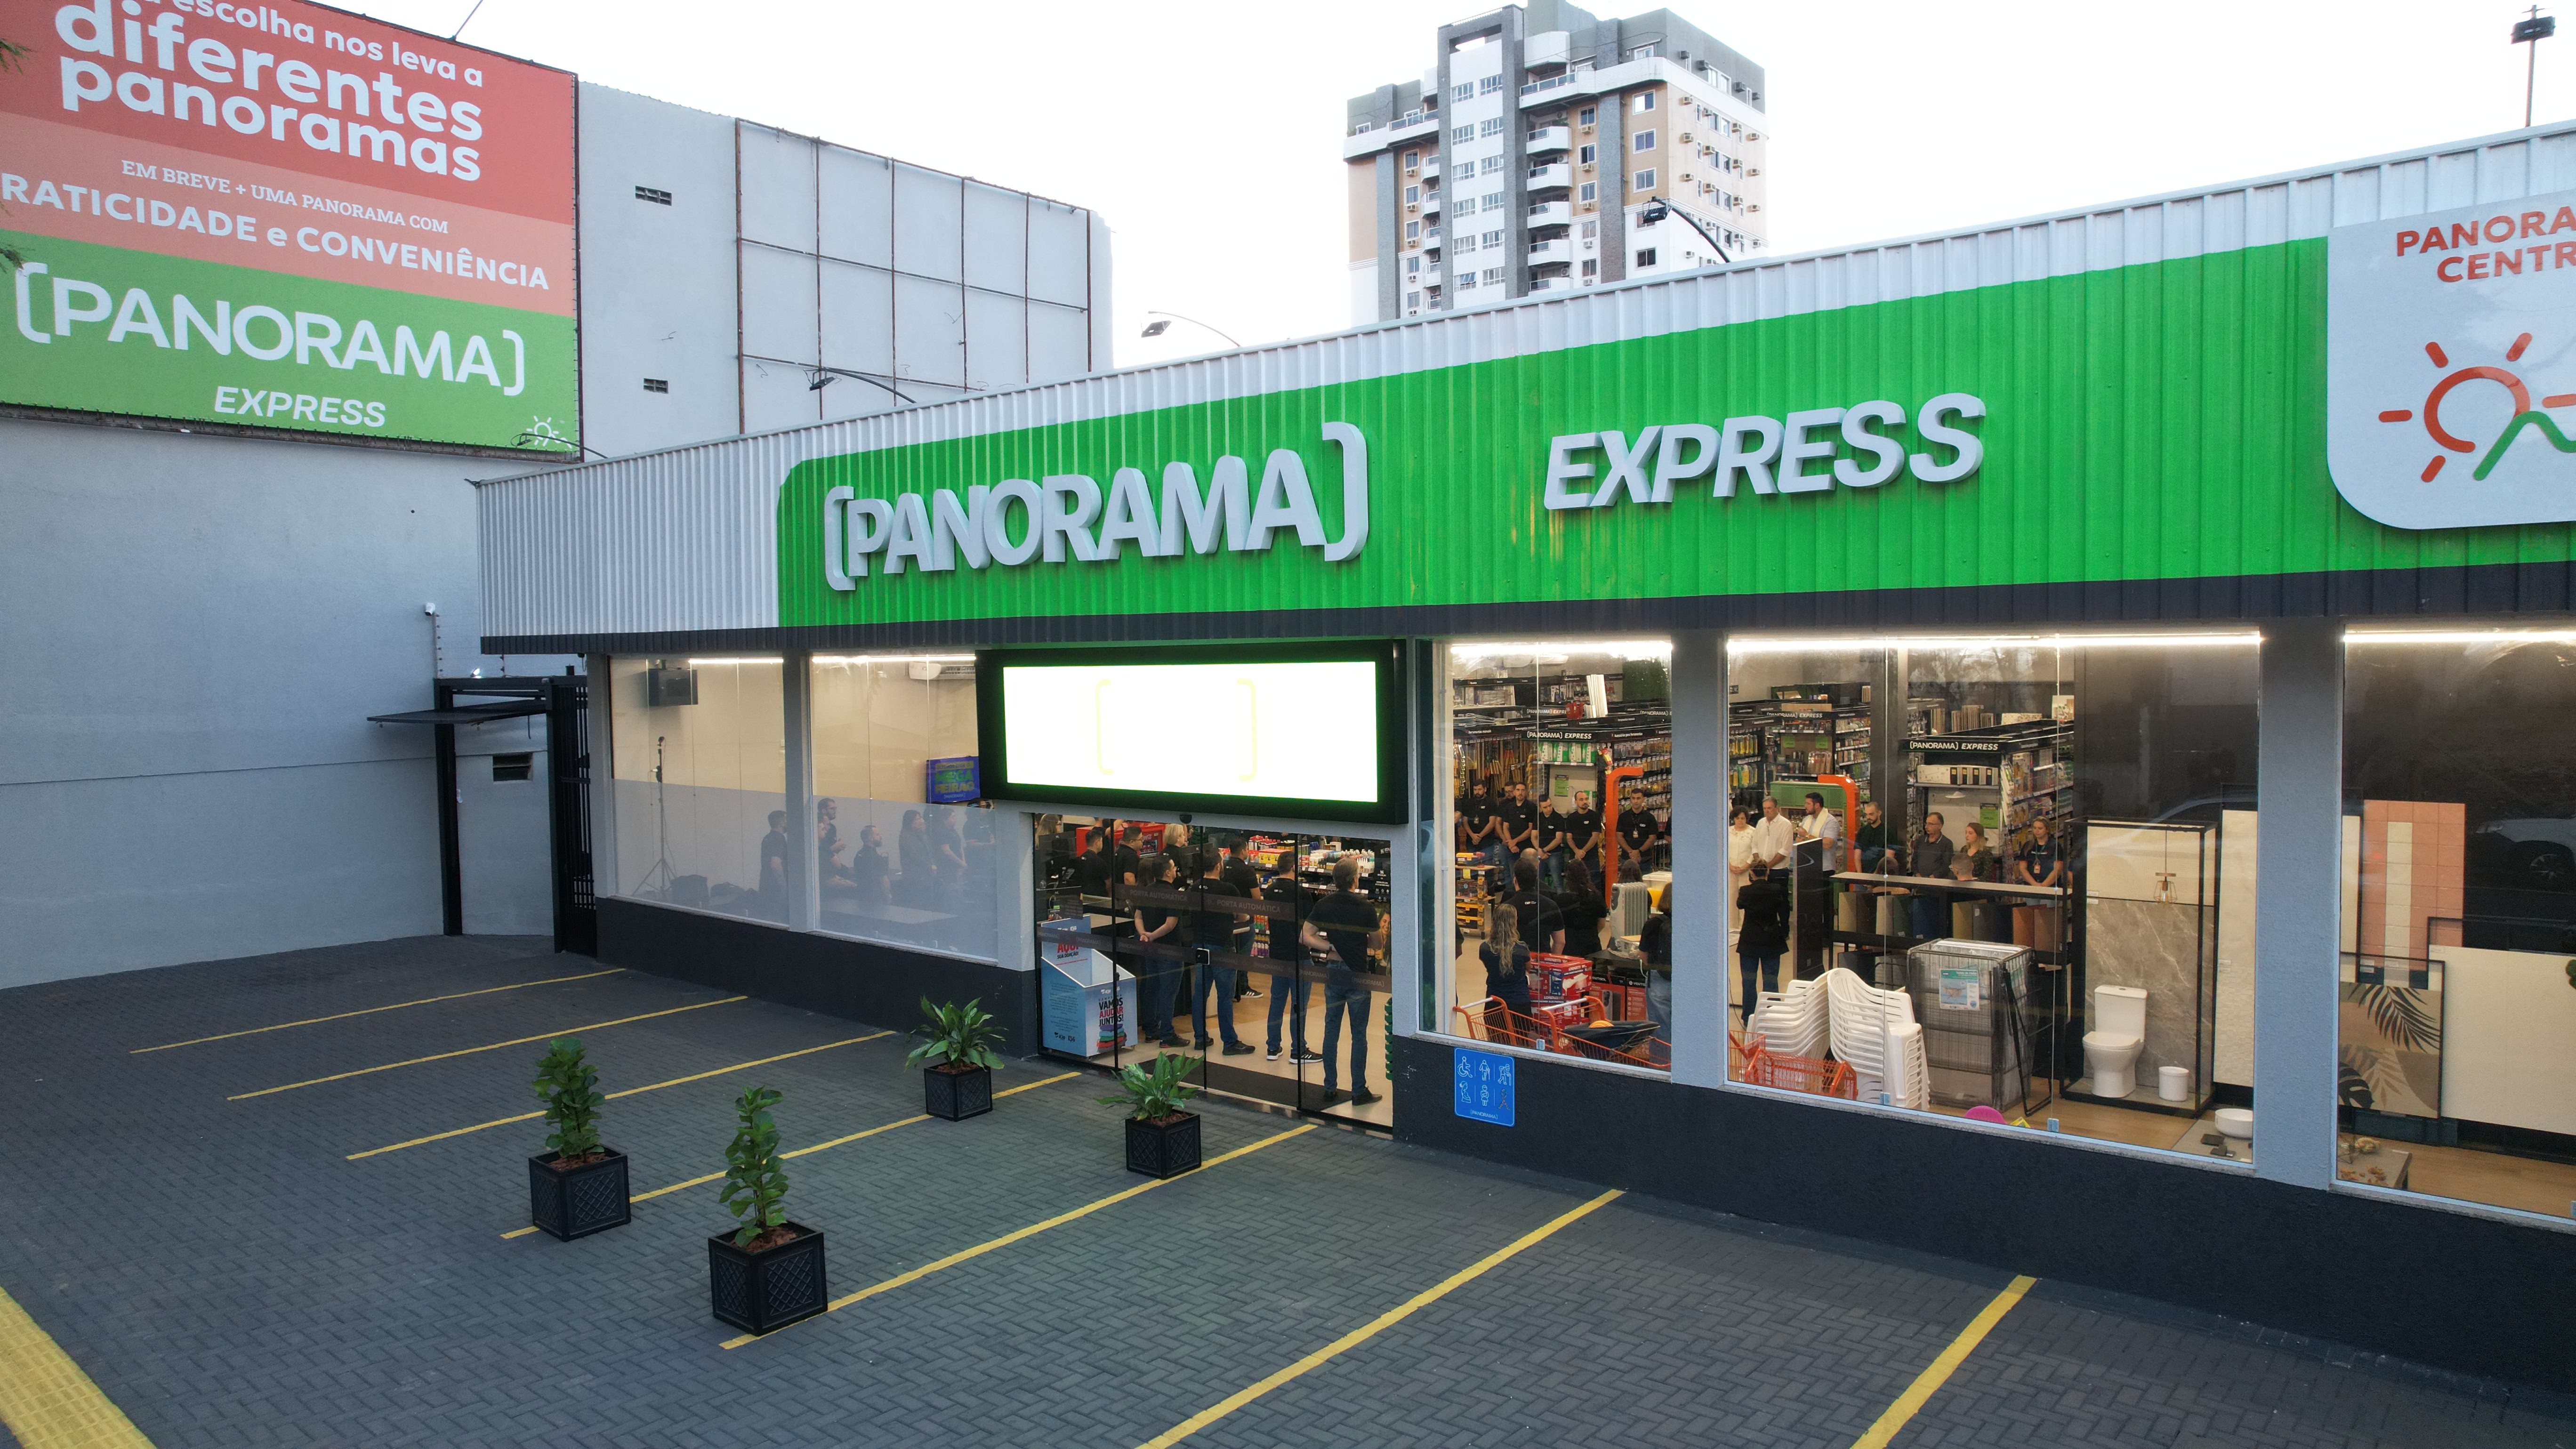 Panorama inaugura sua primeira loja express em Foz do Iguaçu 